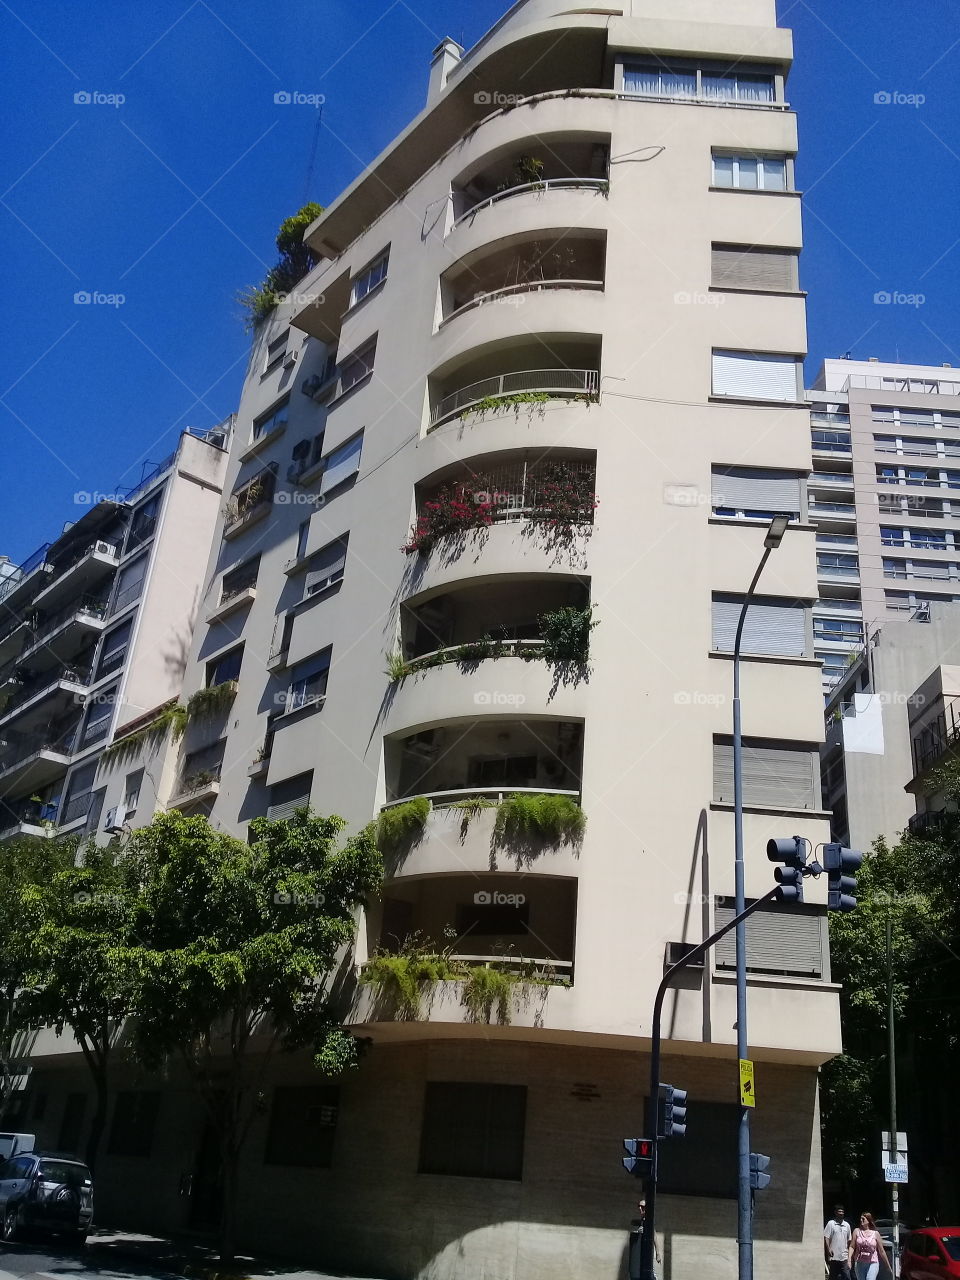 conjunto de modernas edificaciones urbanas destinadas a oficinas y viviendas familiares en una céntrica avenida de la ciudad de Buenos Aires